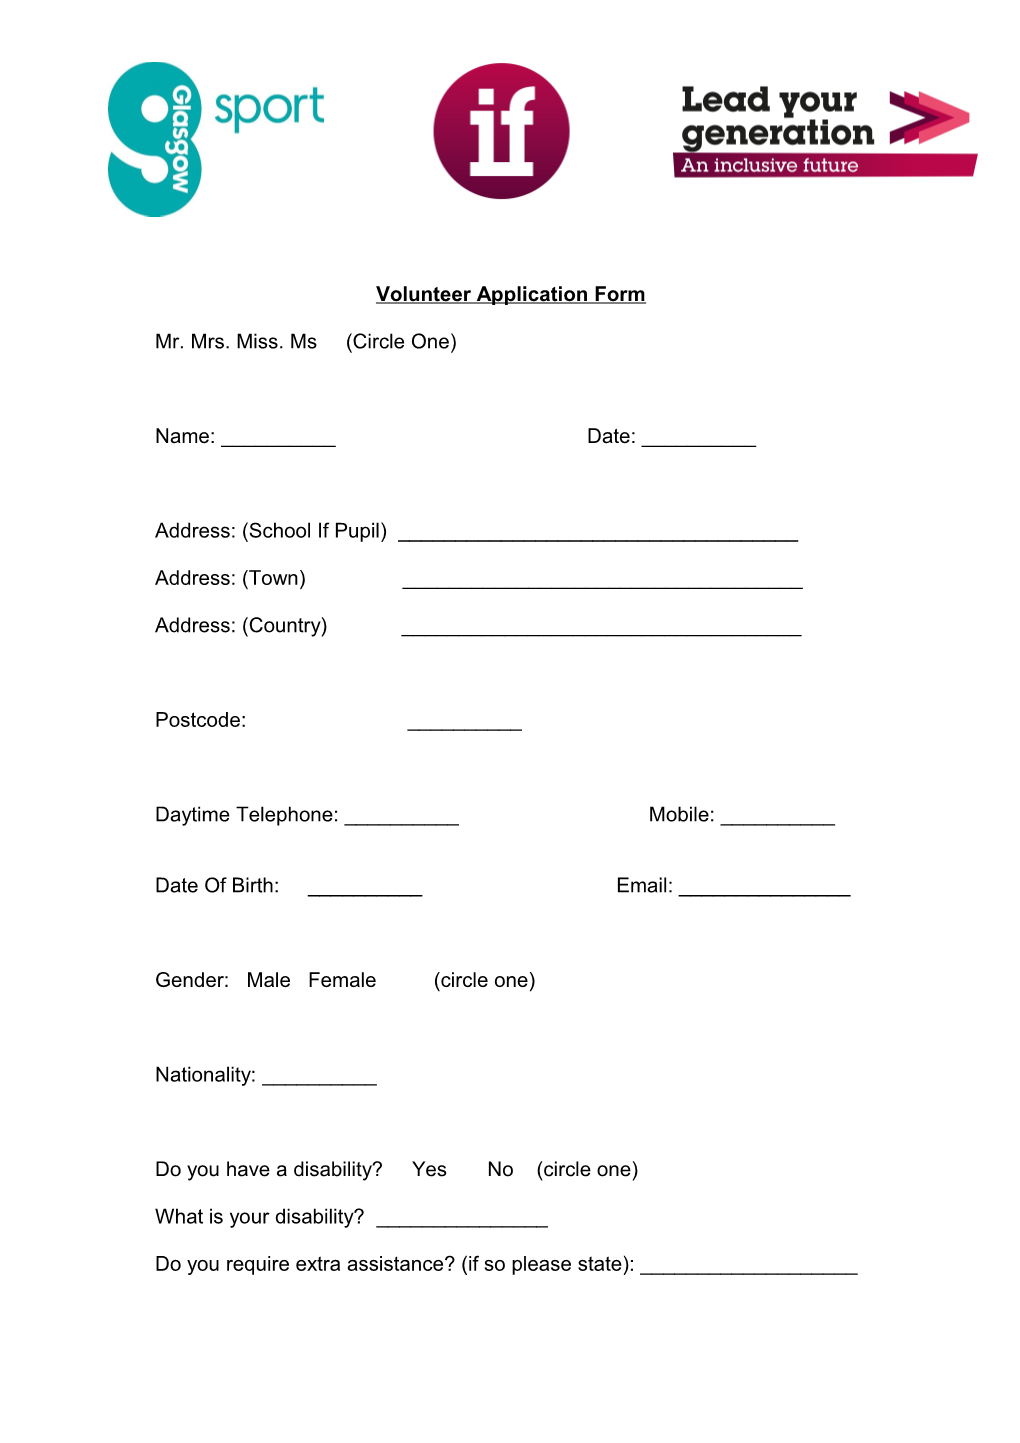 Volunteer Application Form s2